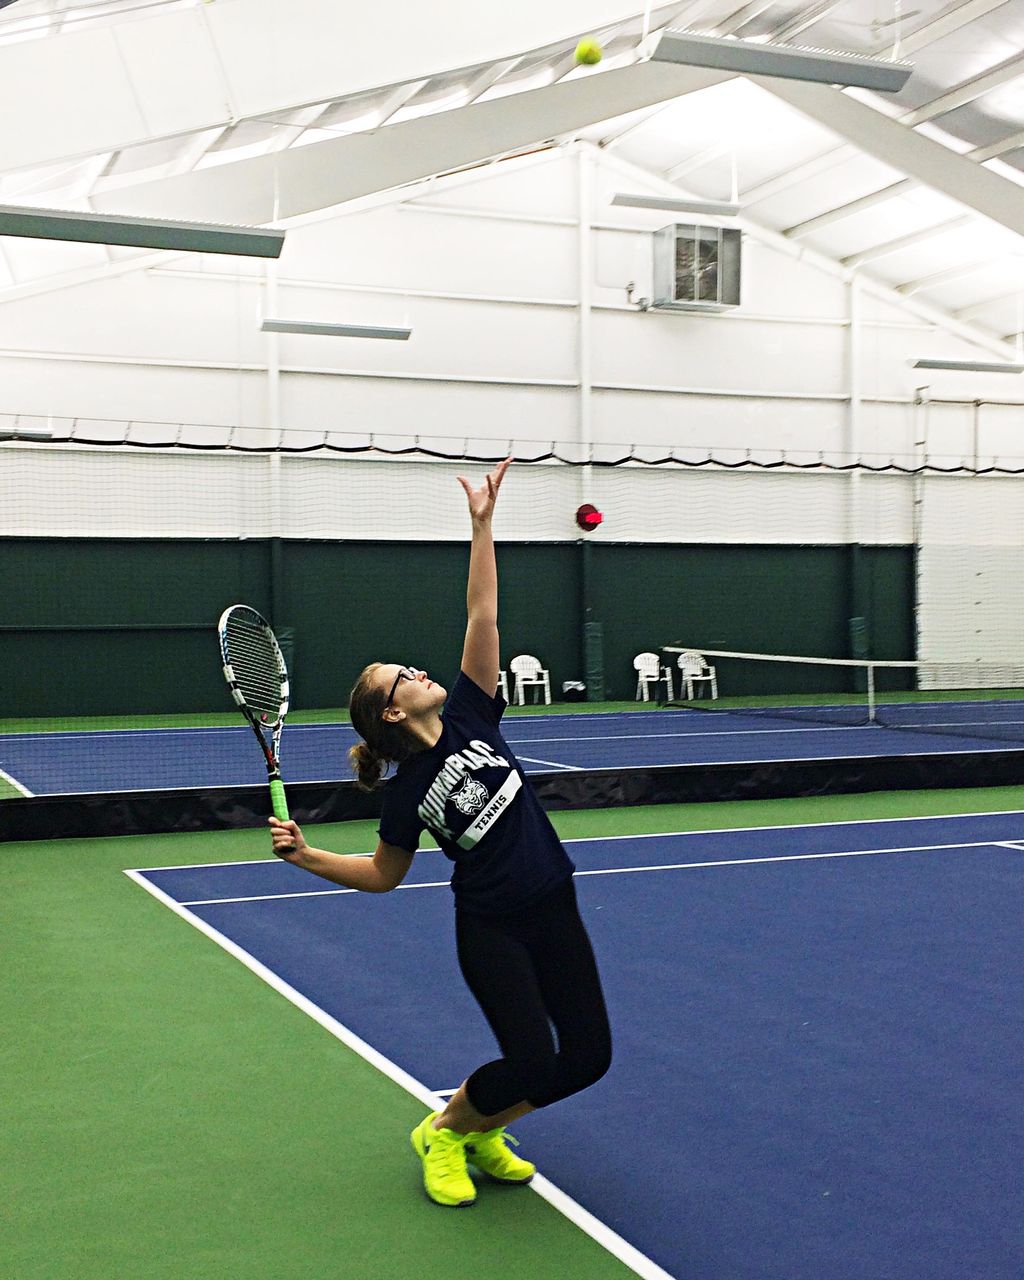 Rachel's Tennis Lessons